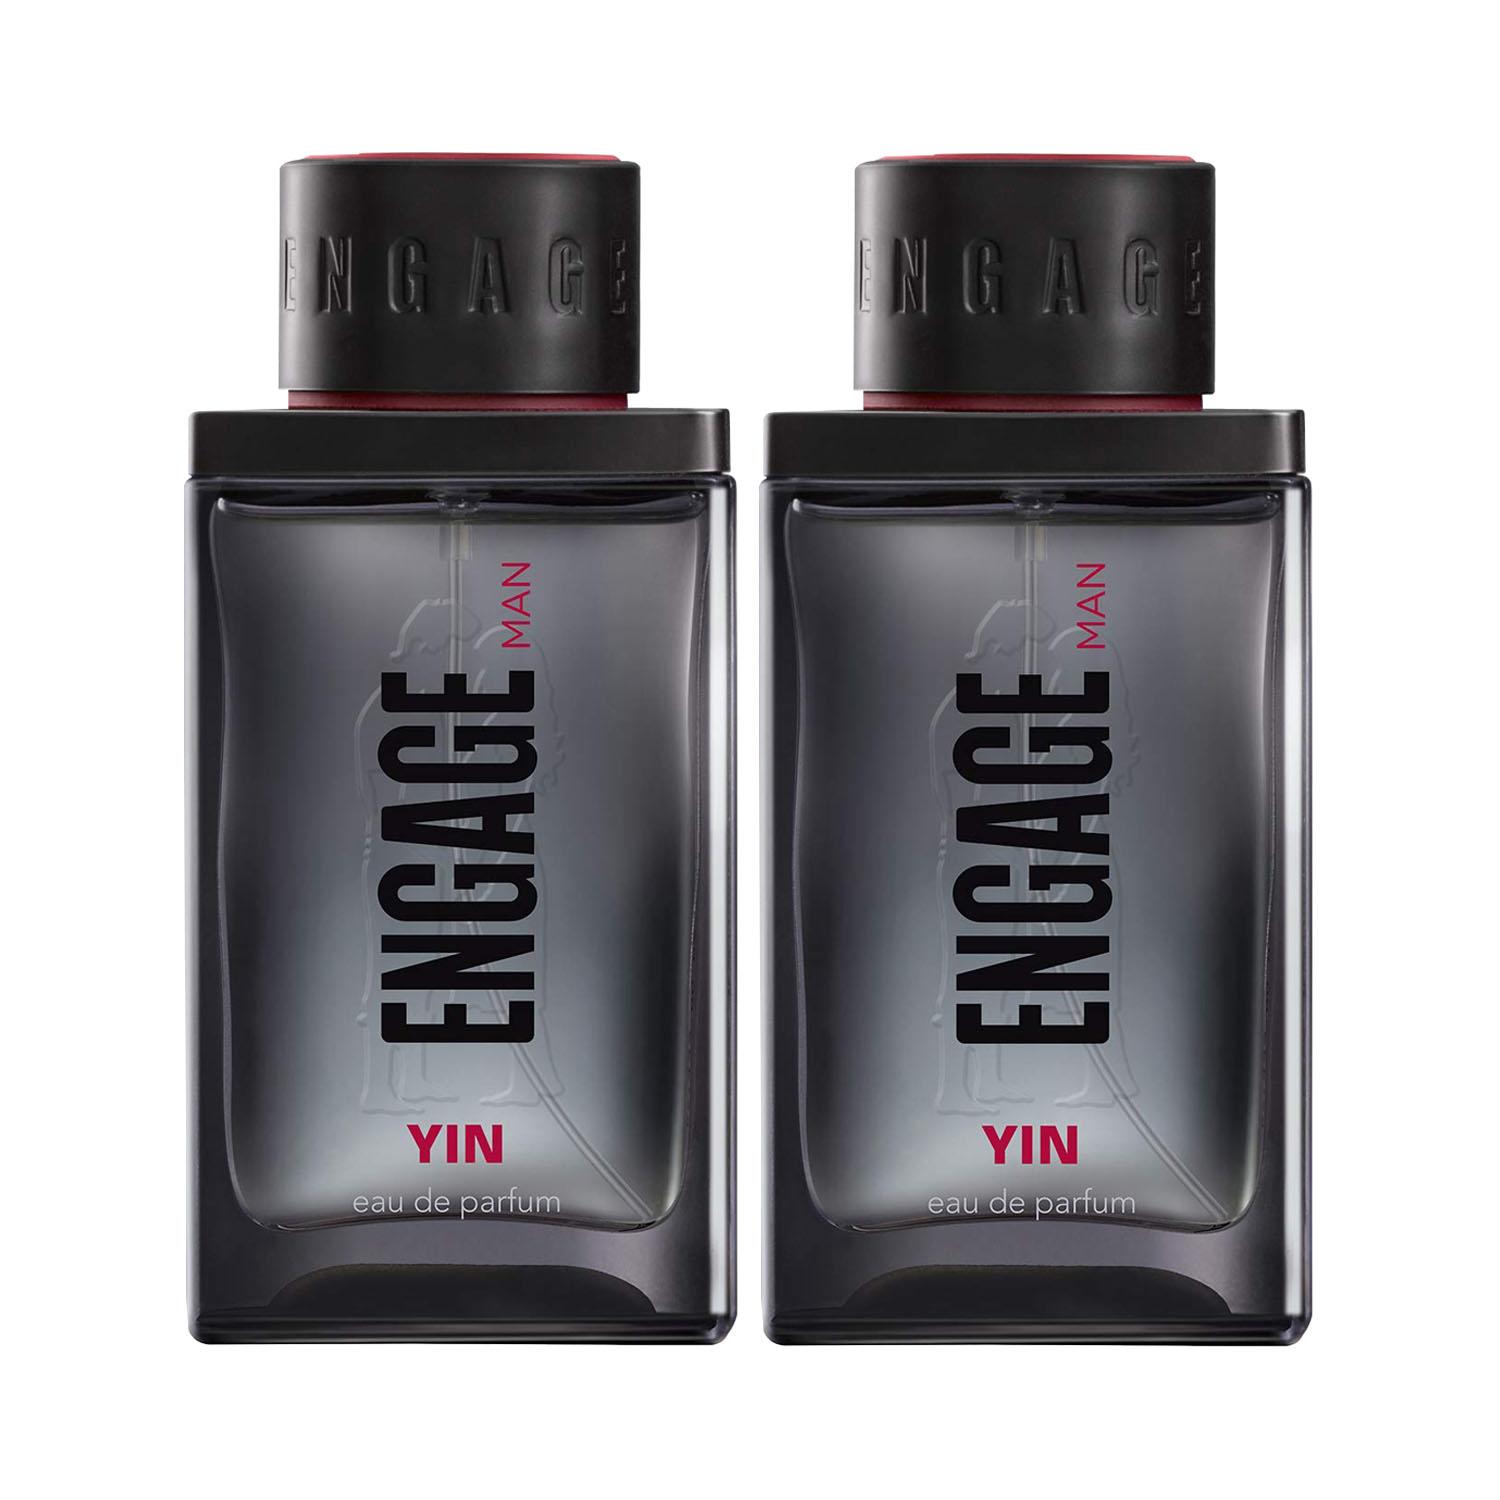 Engage | Engage Premium Perfume Combo Man (Yin)